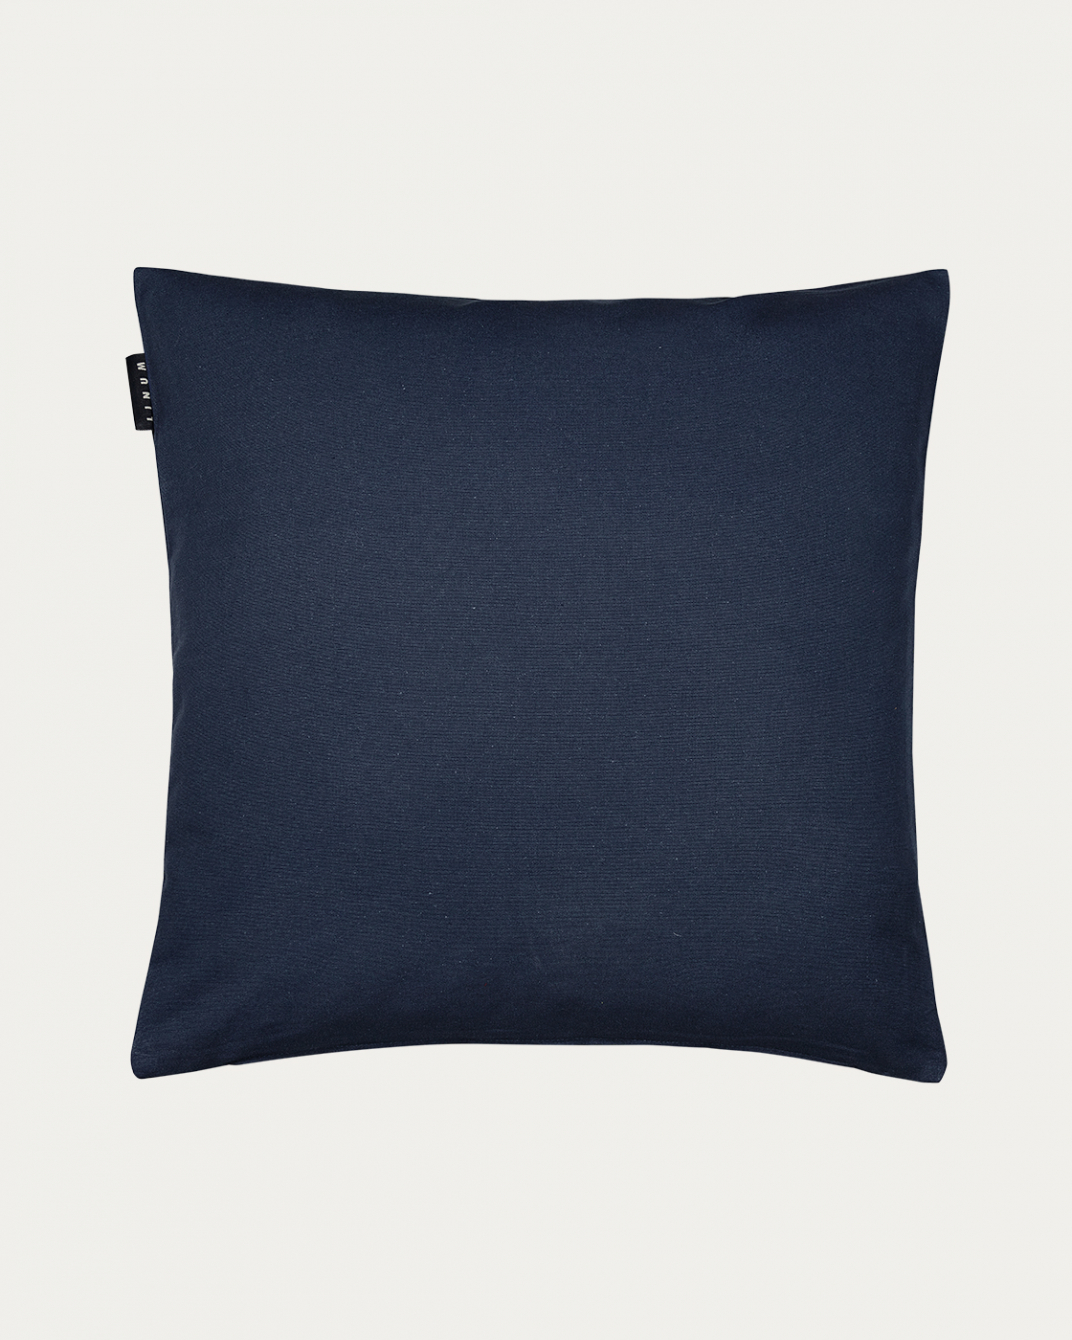 ANNABELL Cushion cover 50x50 cm Dark navy blue